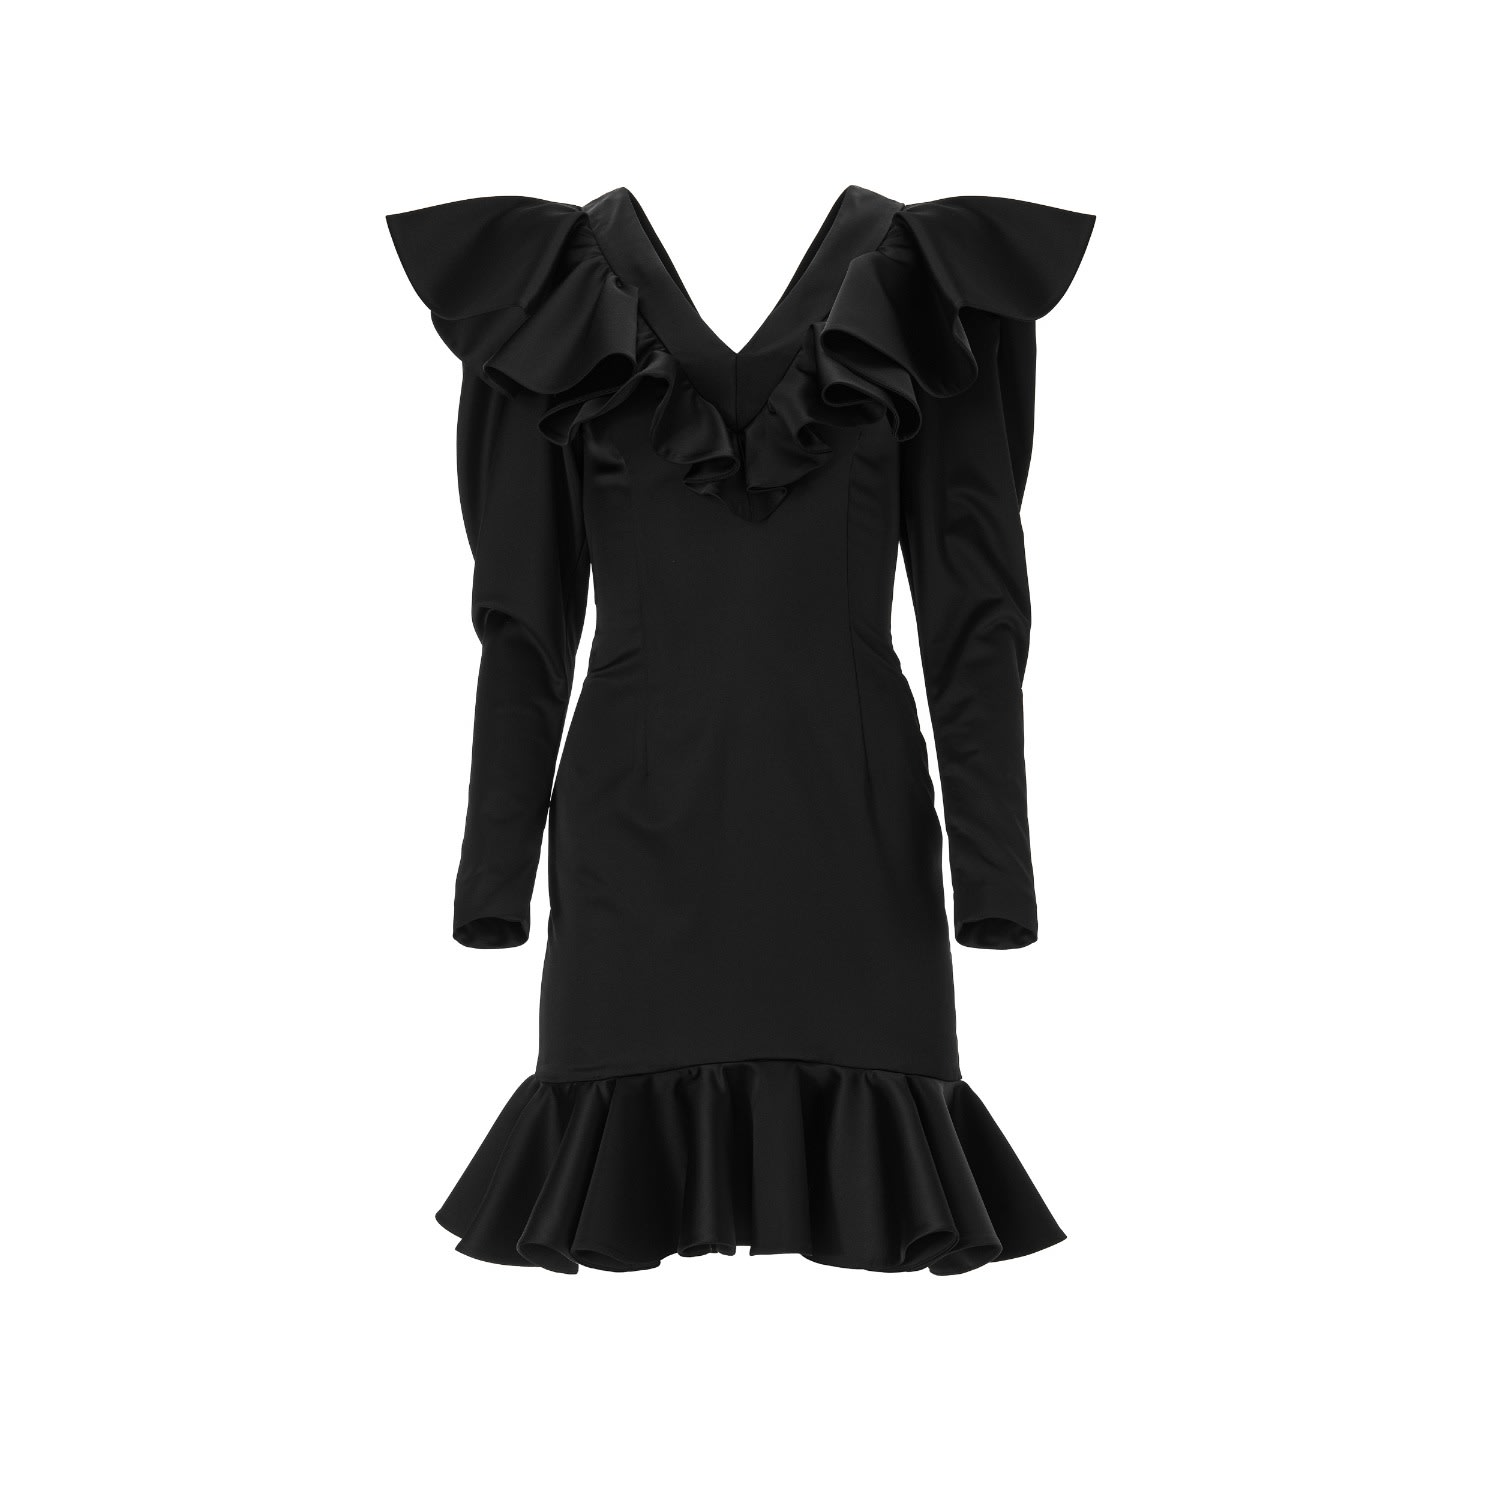 Shop Lita Couture Women's Signature Black Dress